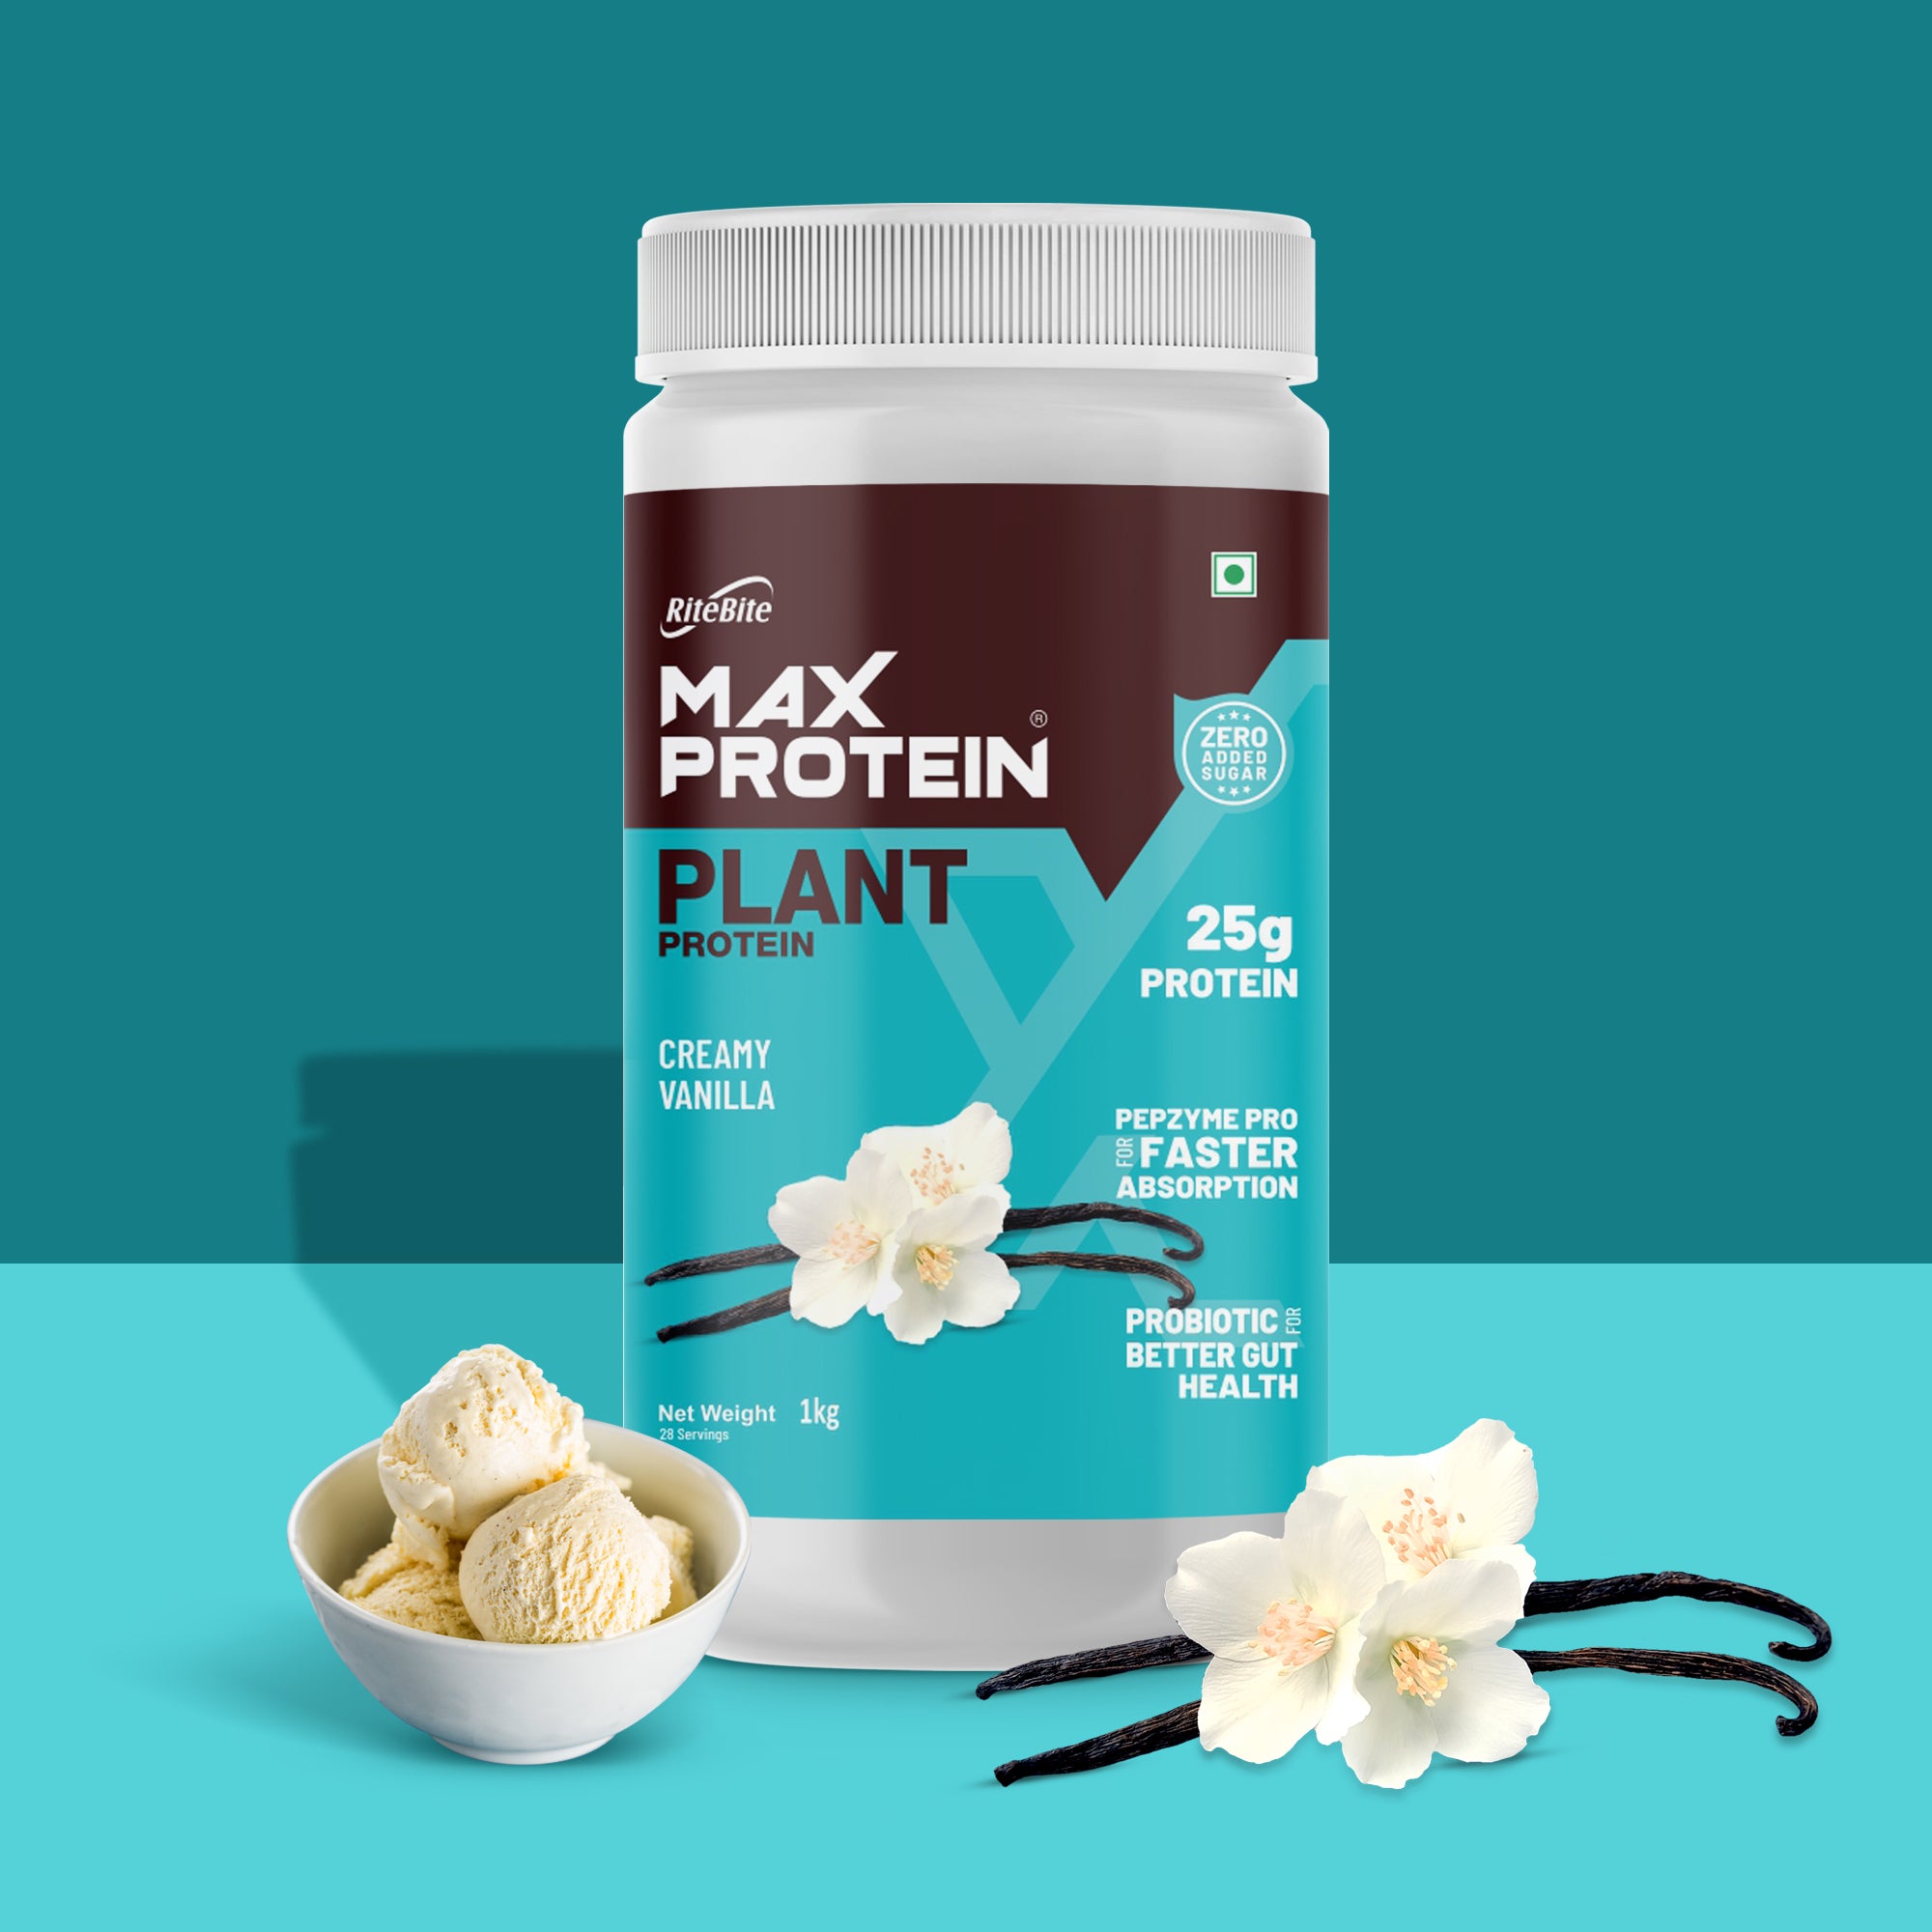 Max Protein Plant Protein - Creamy Vanilla